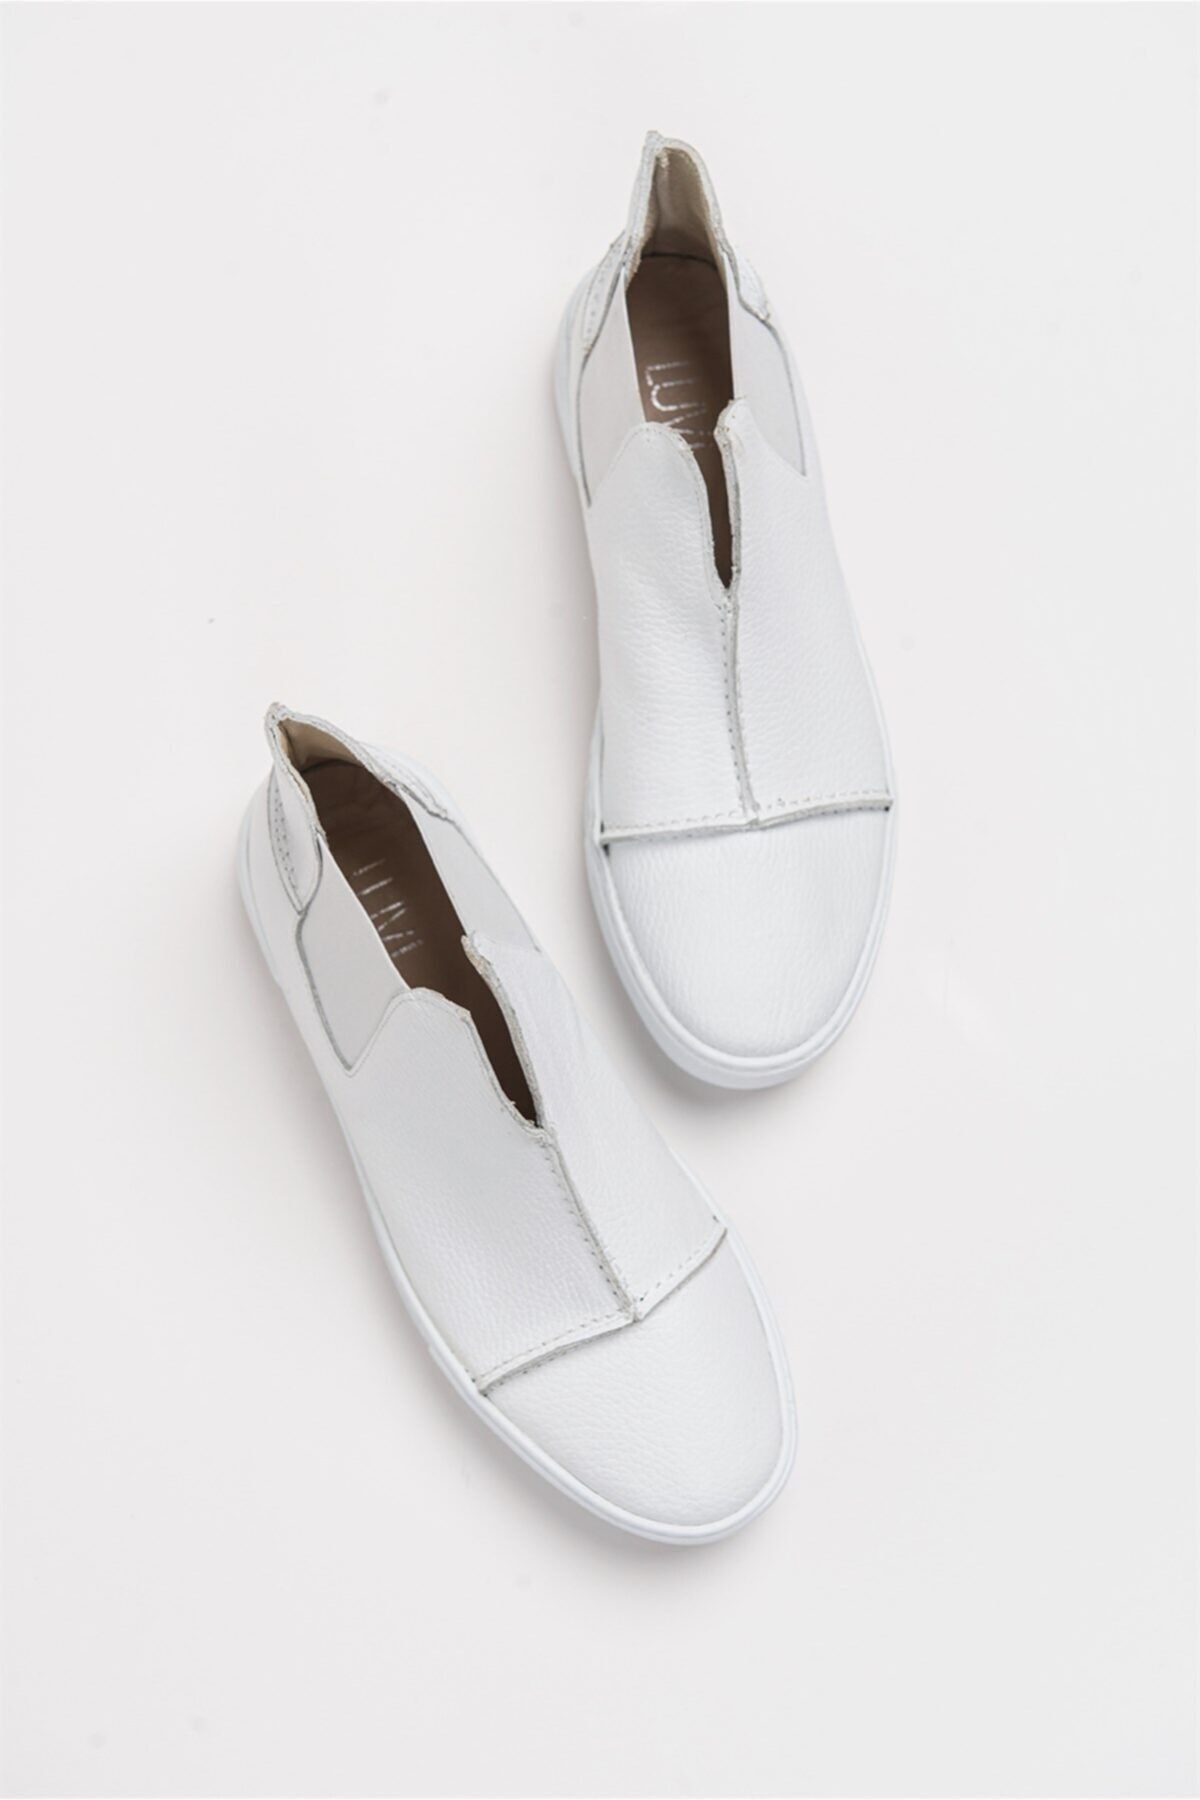 luvishoes 110 Beyaz Deri Kadın Sneakers